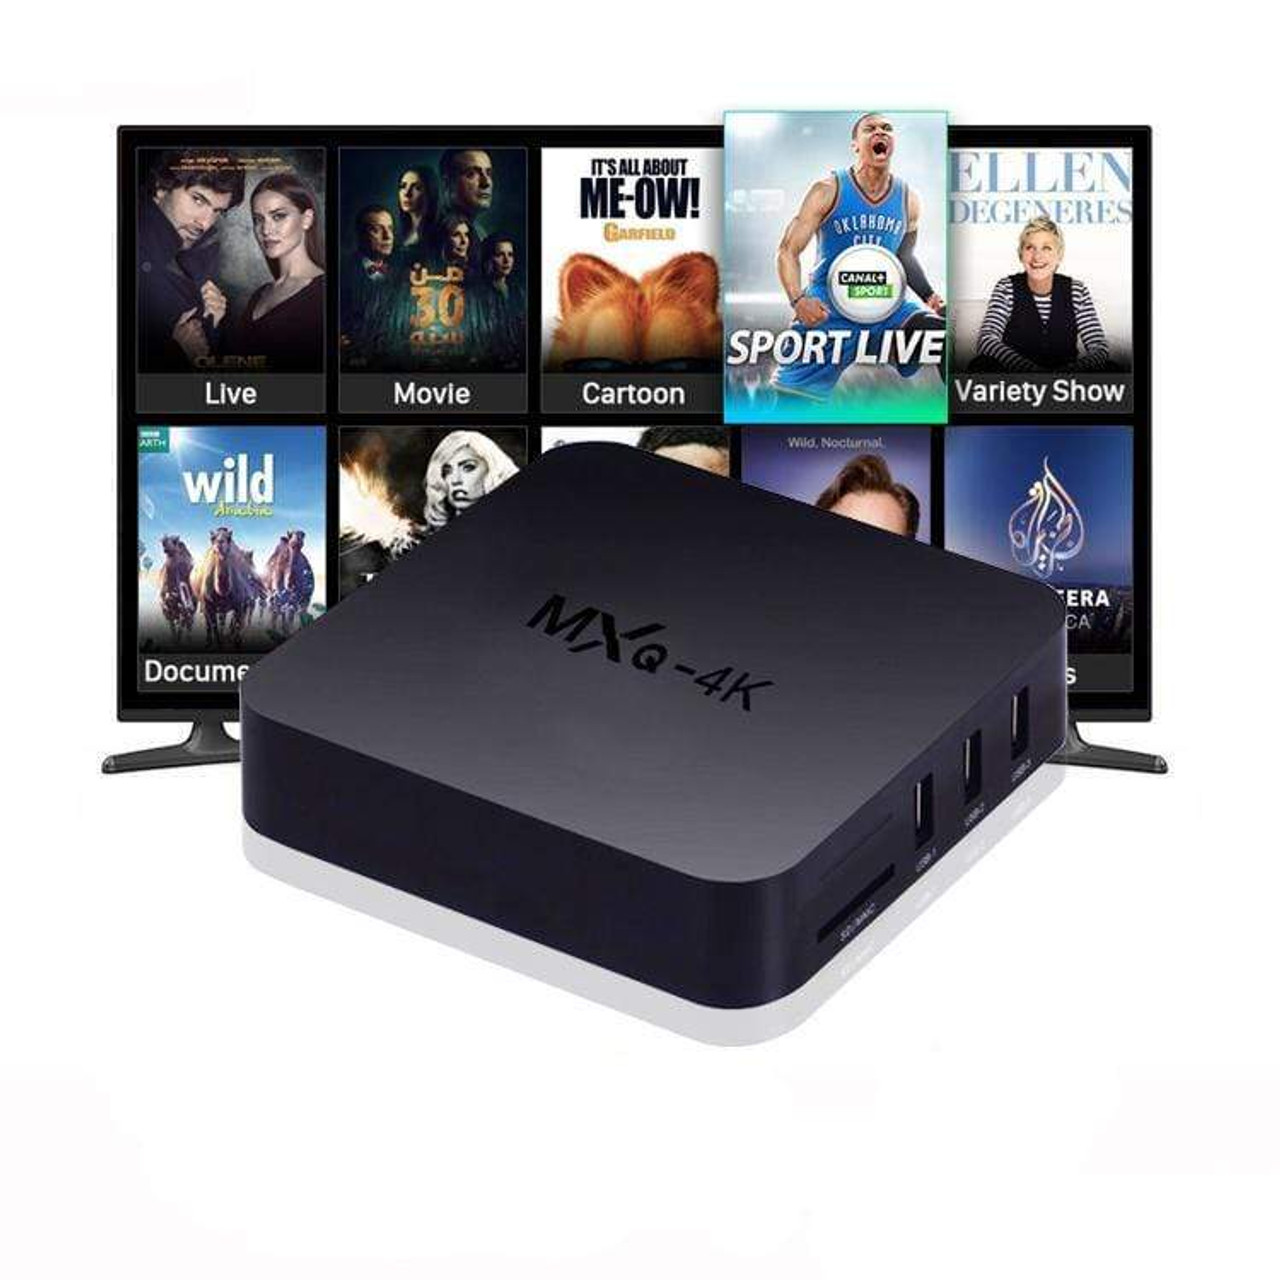 MXQ Pro 4K Smart TV Box - Snatcher